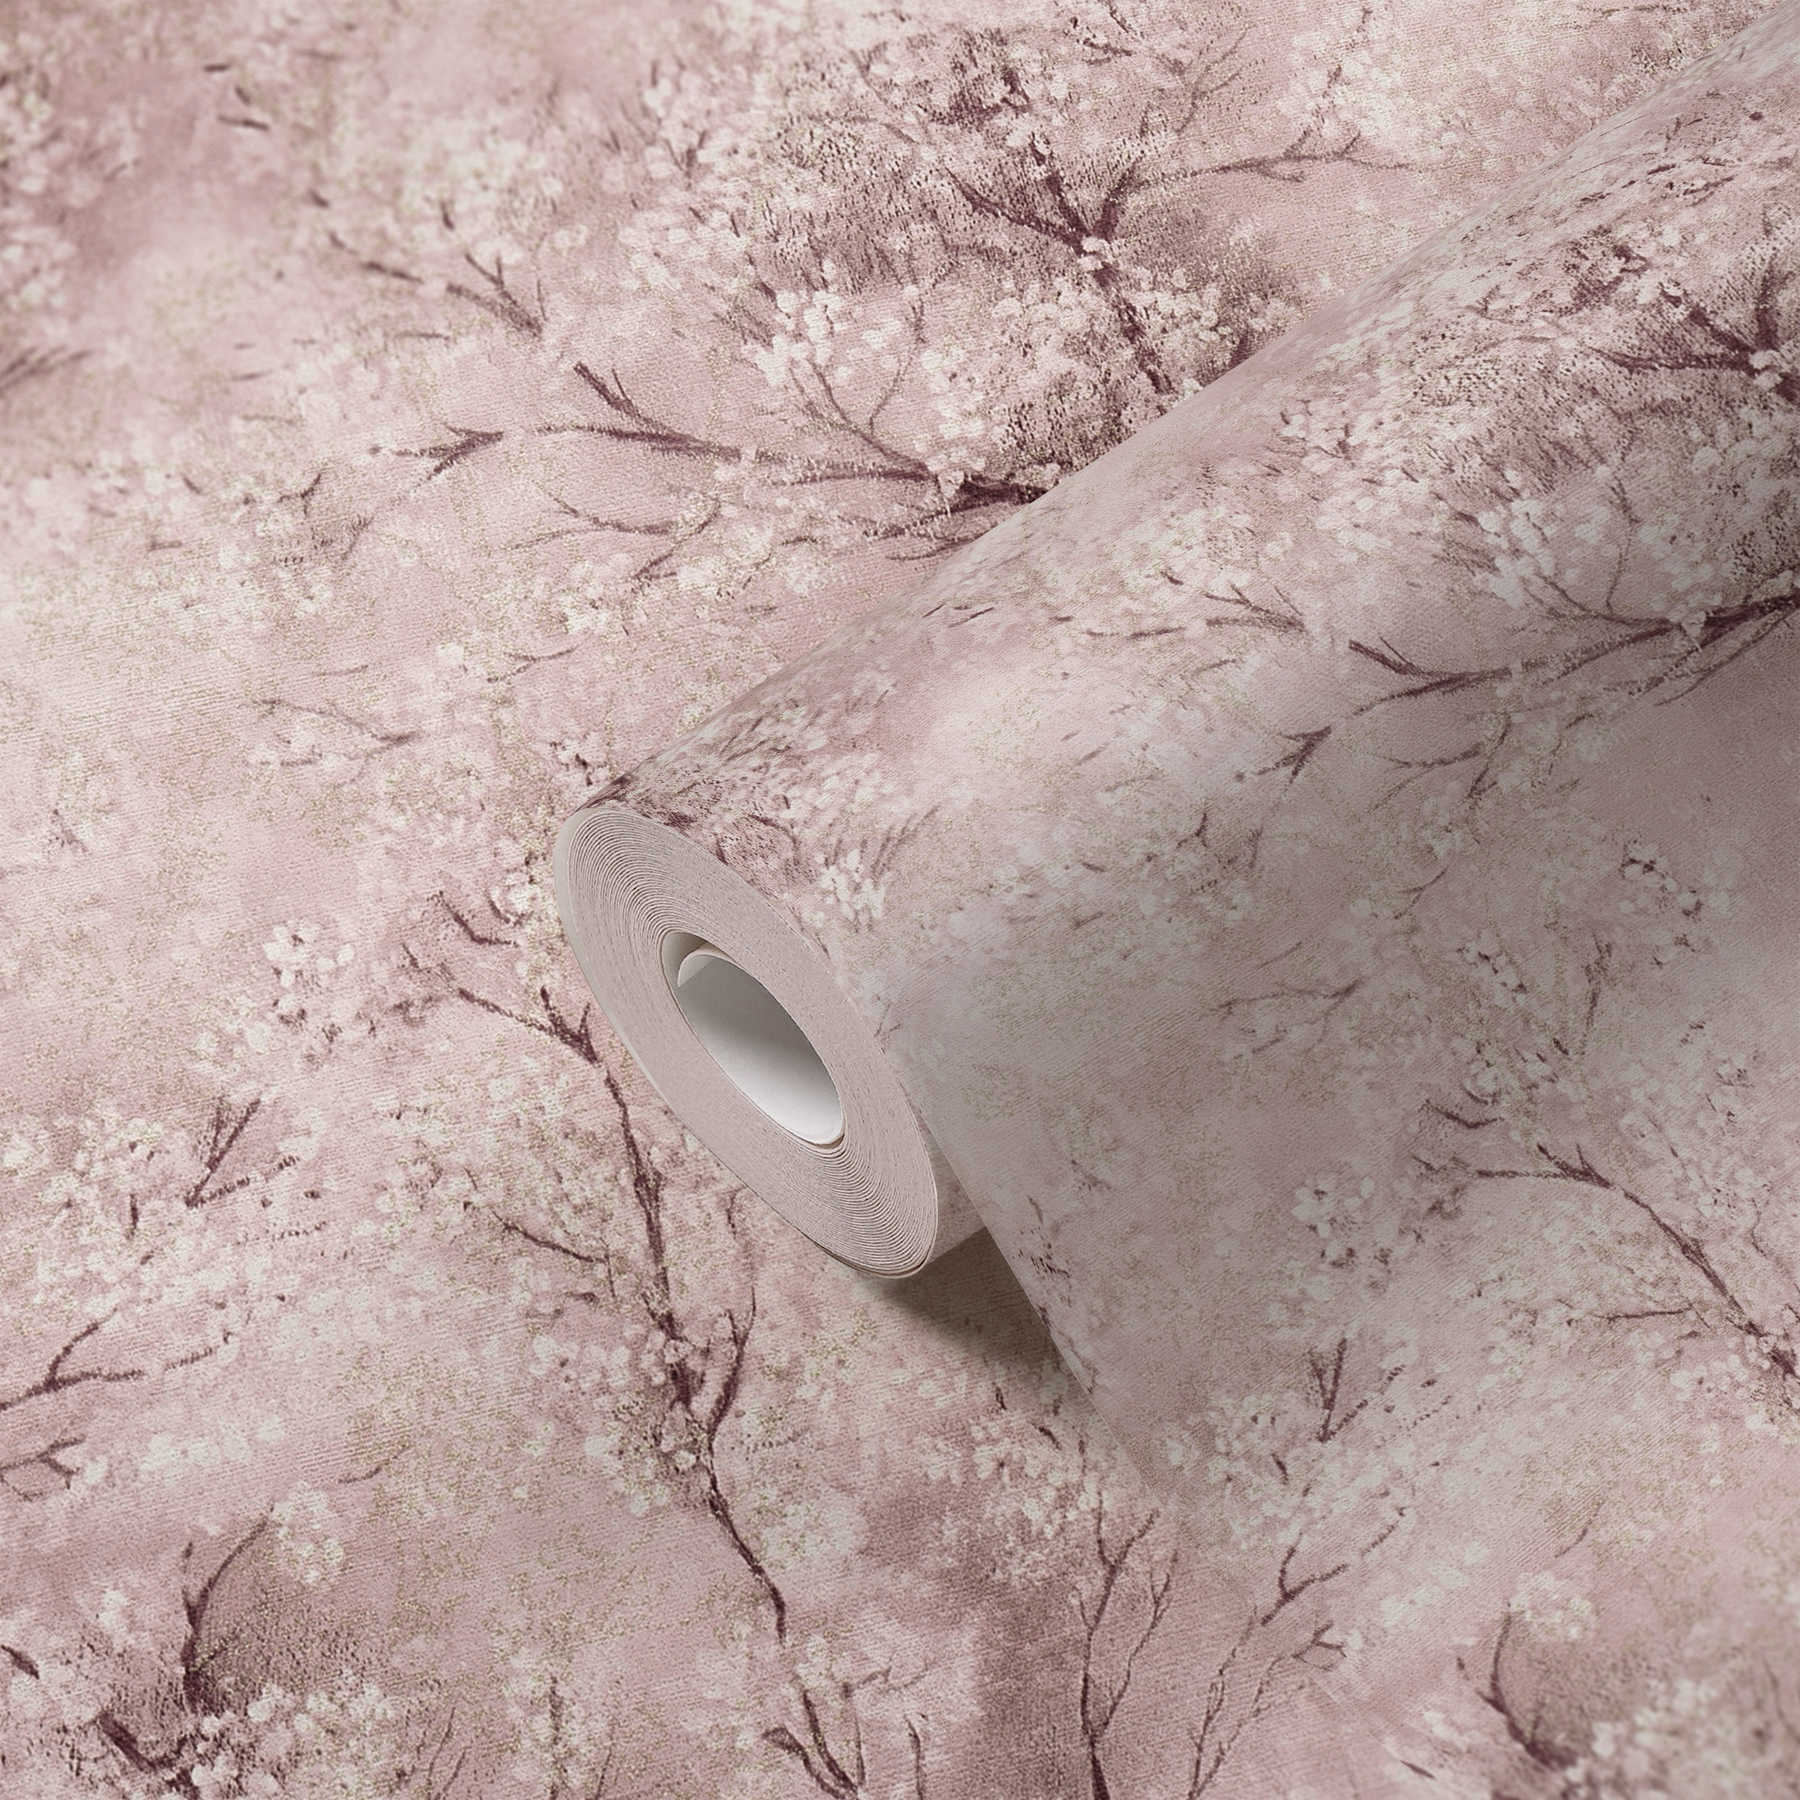             Papier peint Fleurs de cerisier Effet scintillant - rose, marron, blanc
        